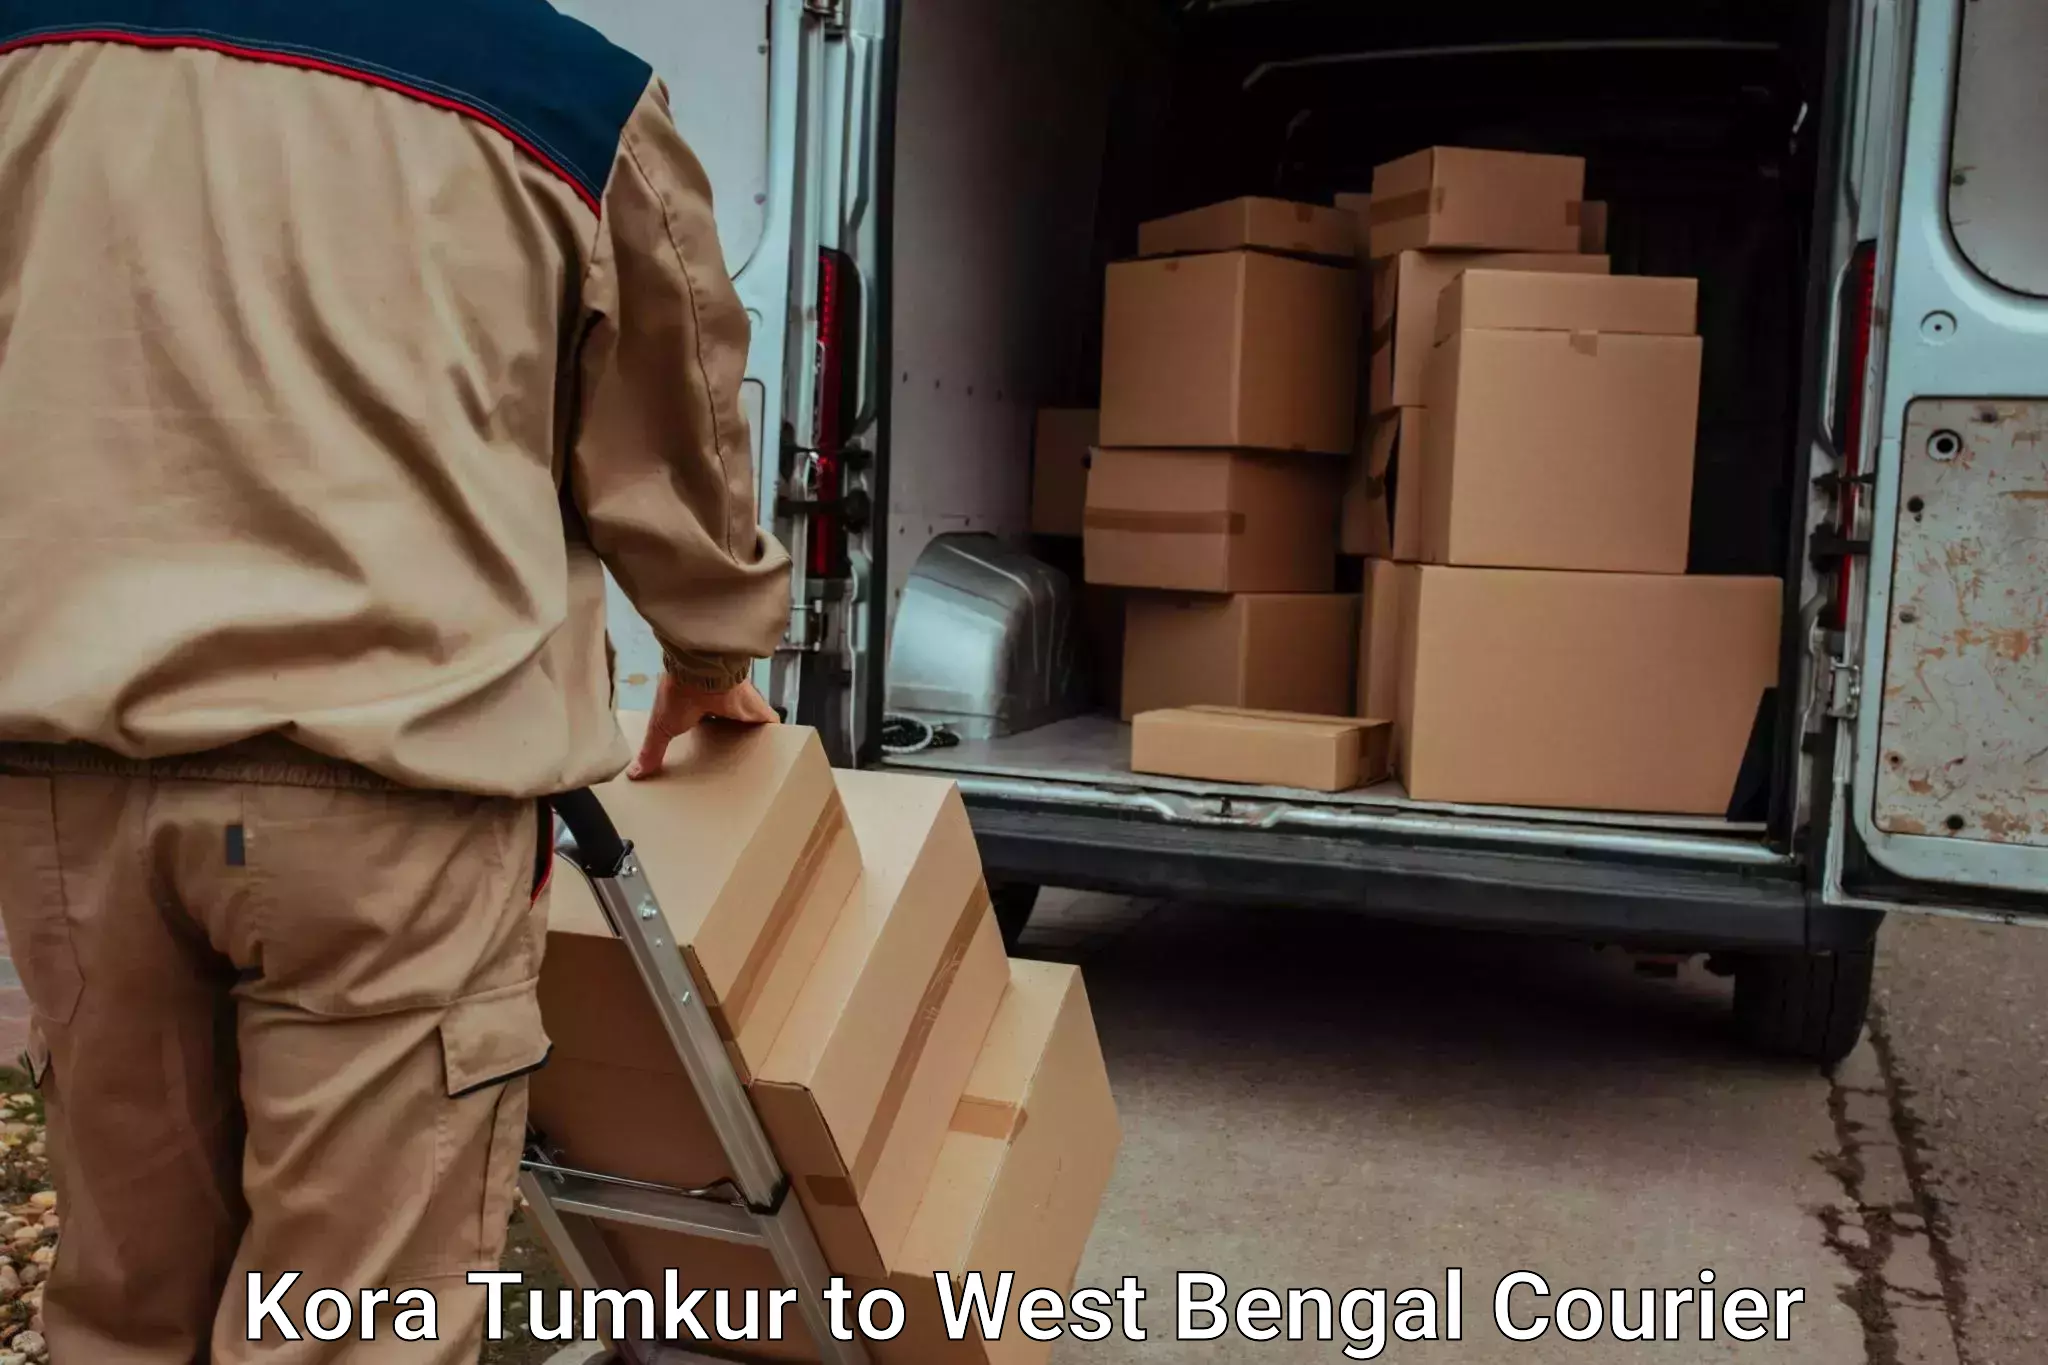 Baggage transport cost Kora Tumkur to Maheshtala